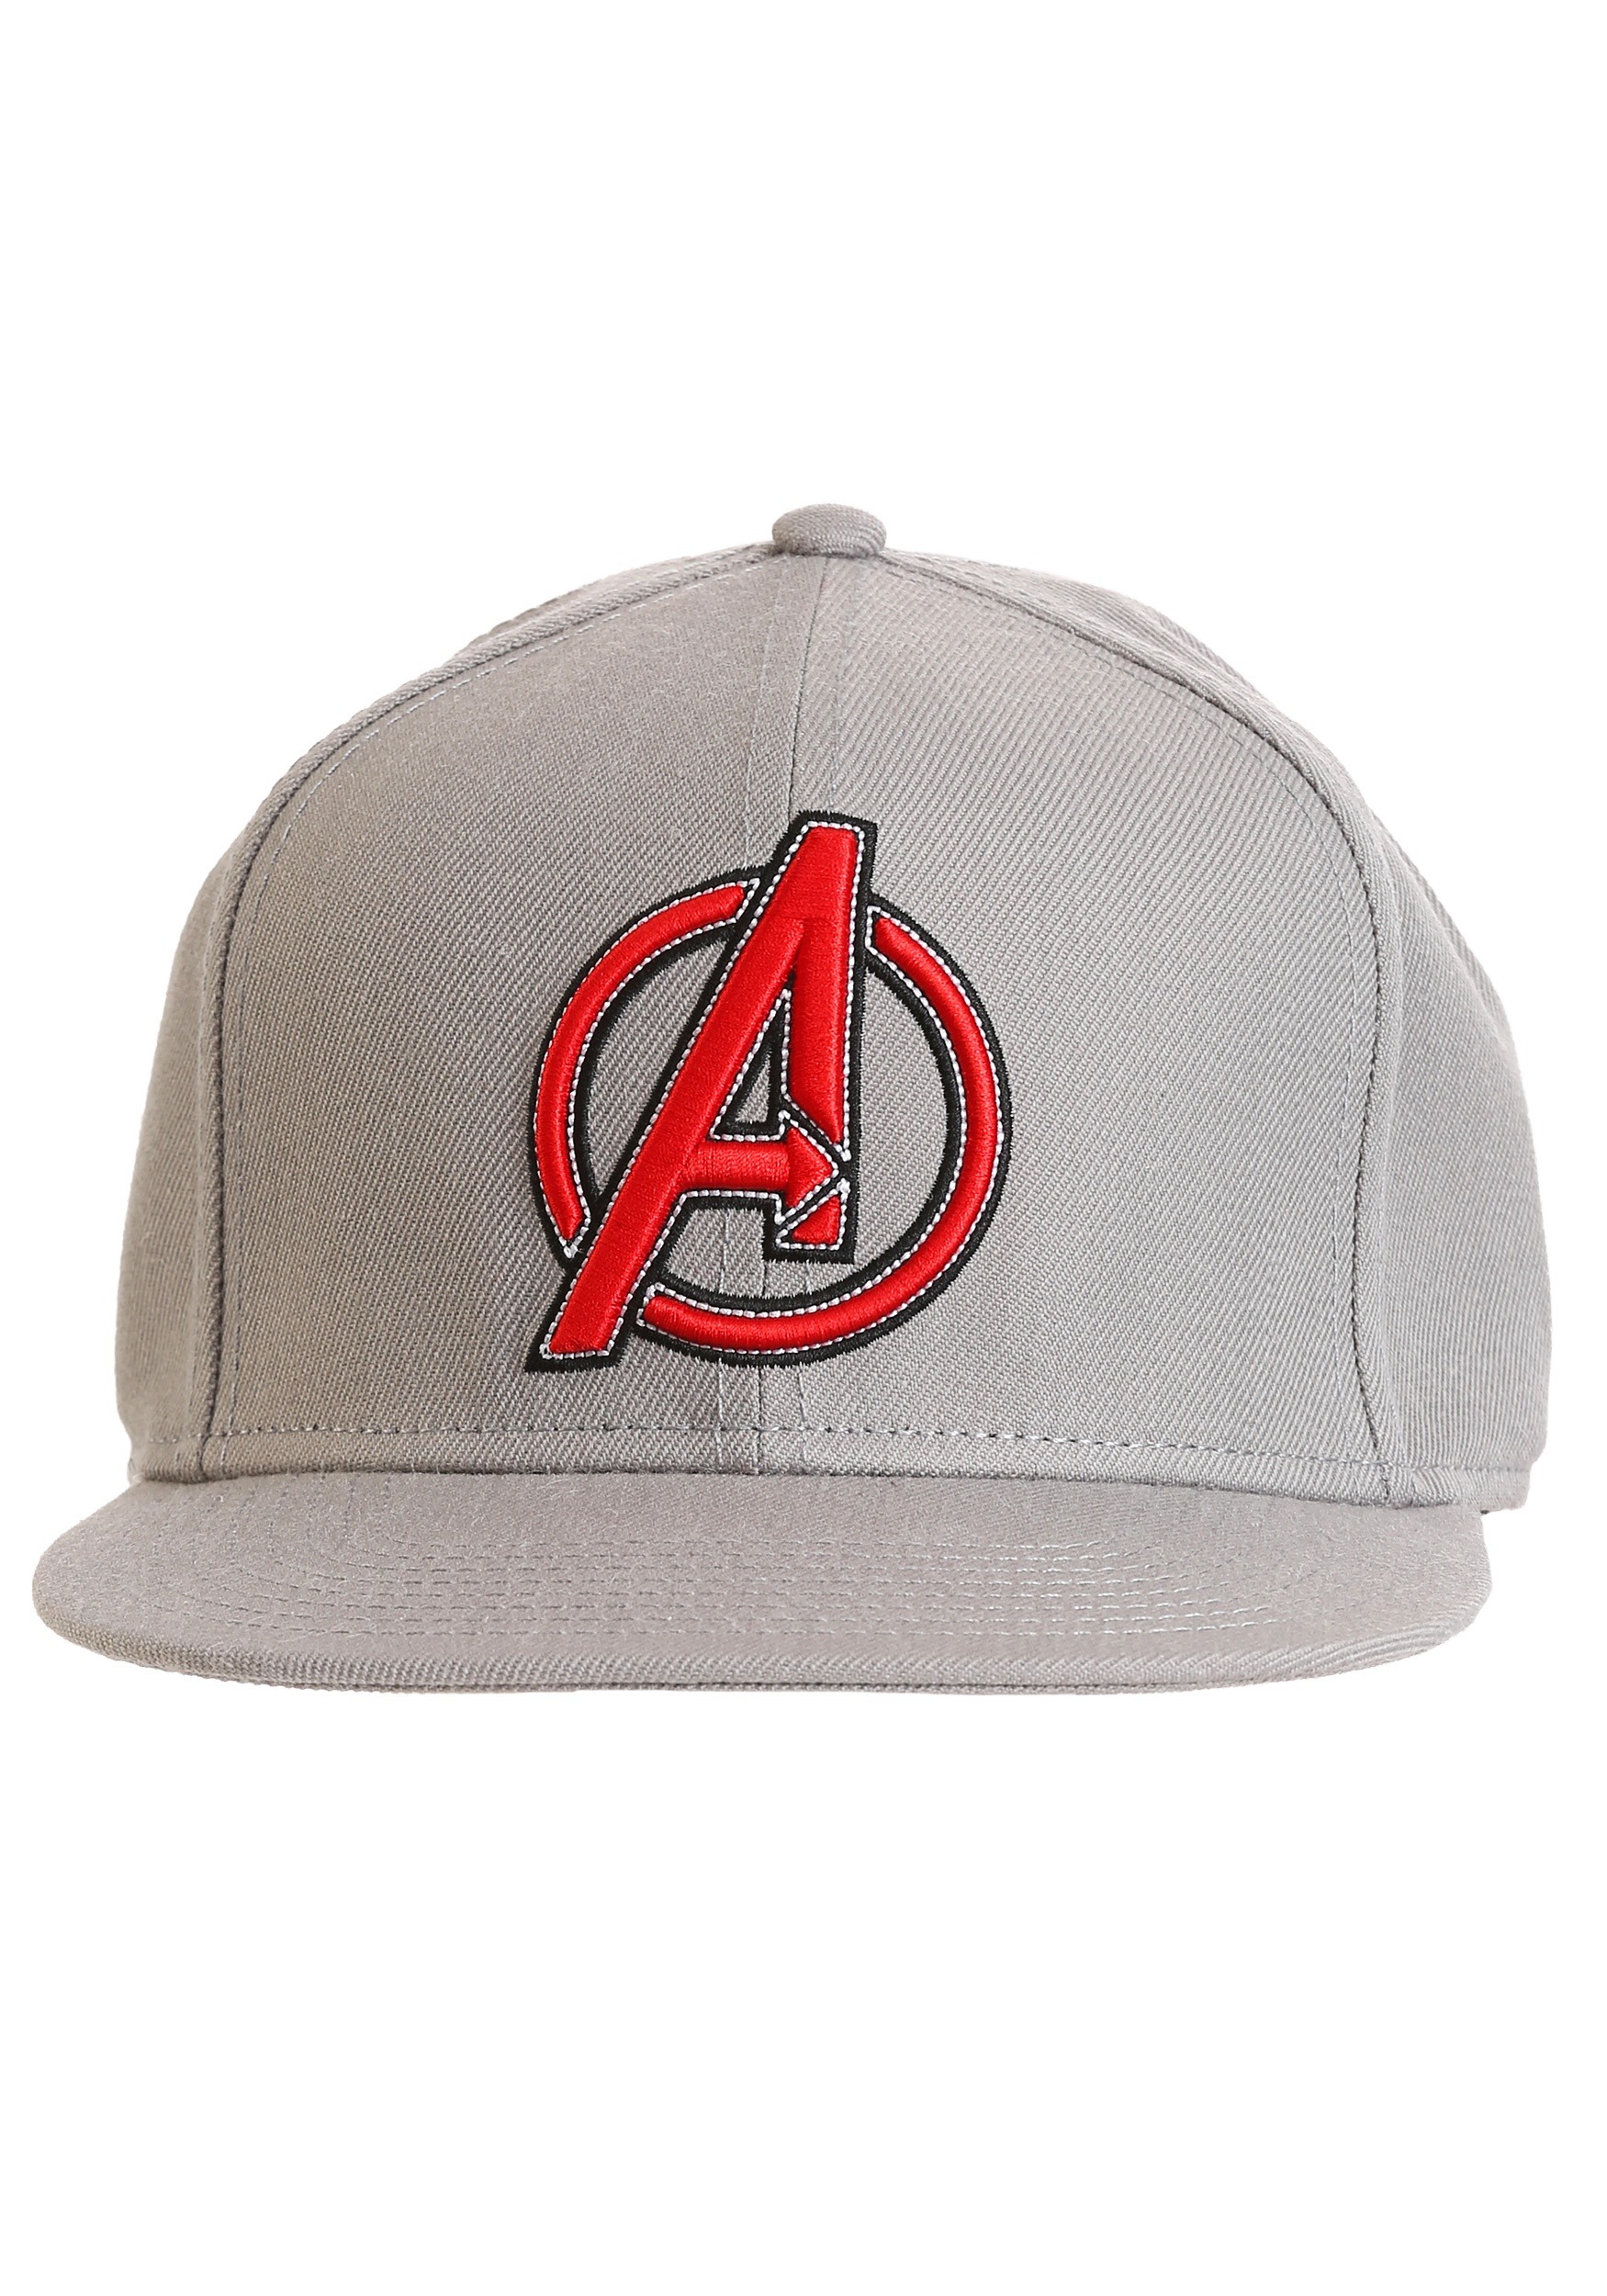 Back hat. Hermes Baseball cap.